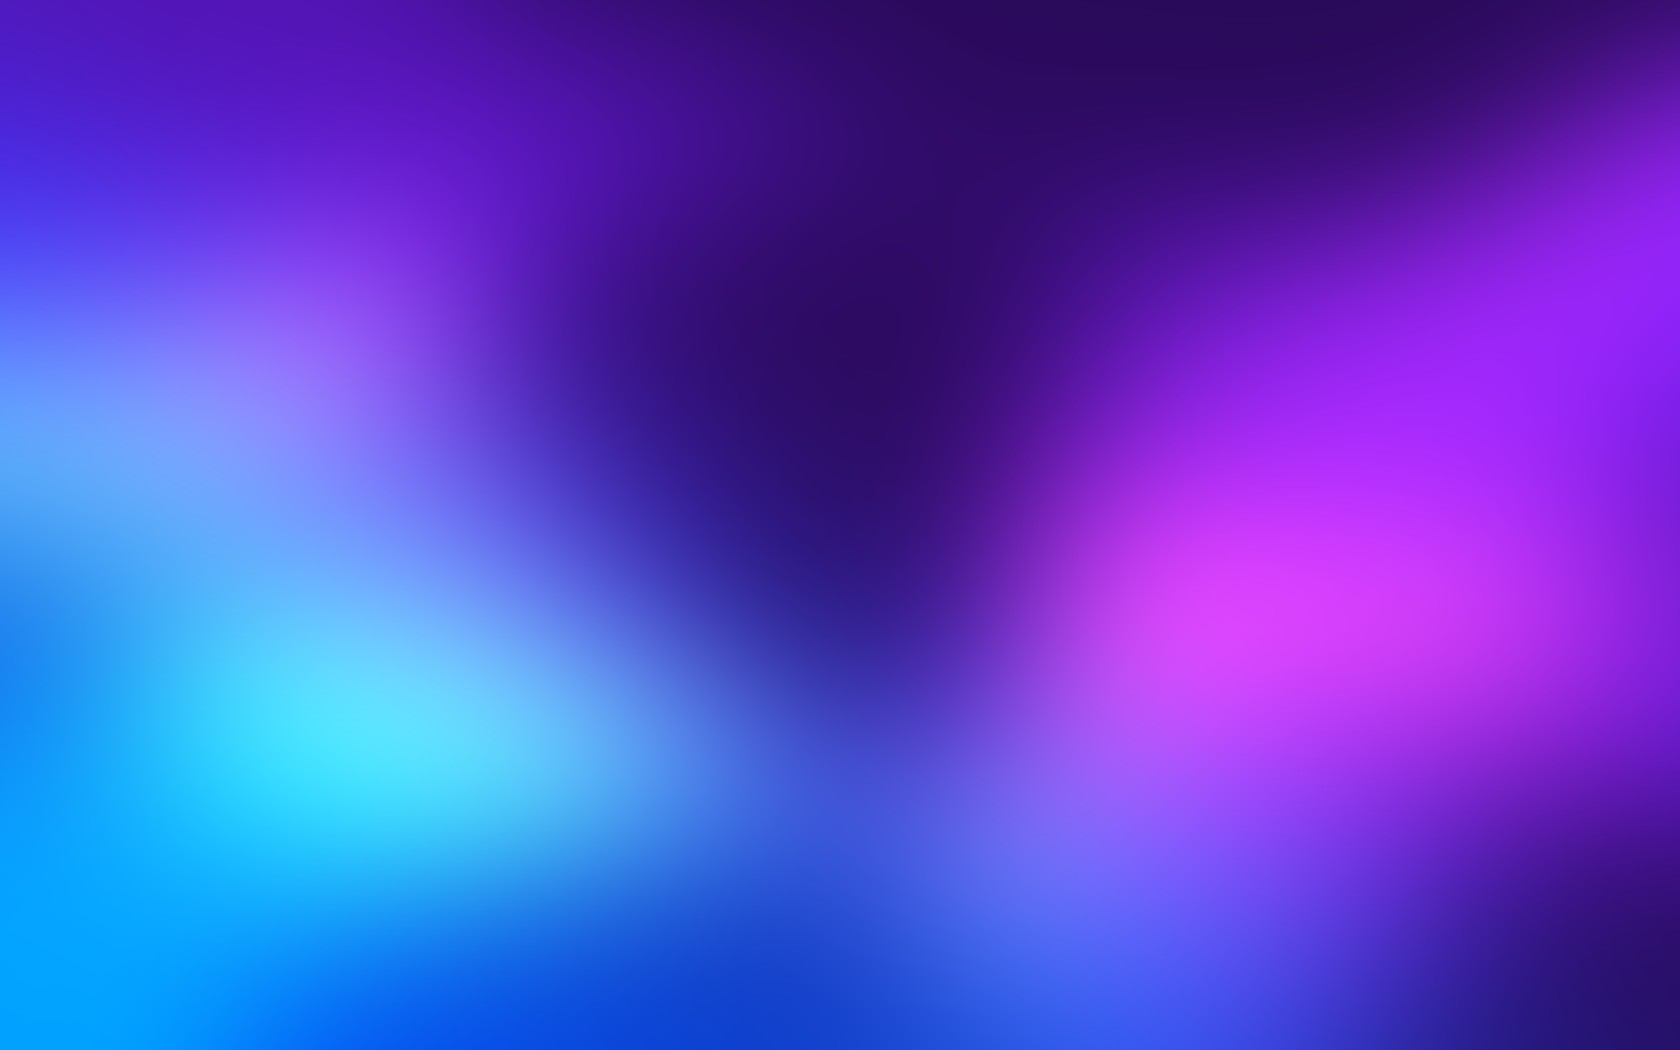 General 1680x1050 blurred depth of field motion blur bluish aurorae